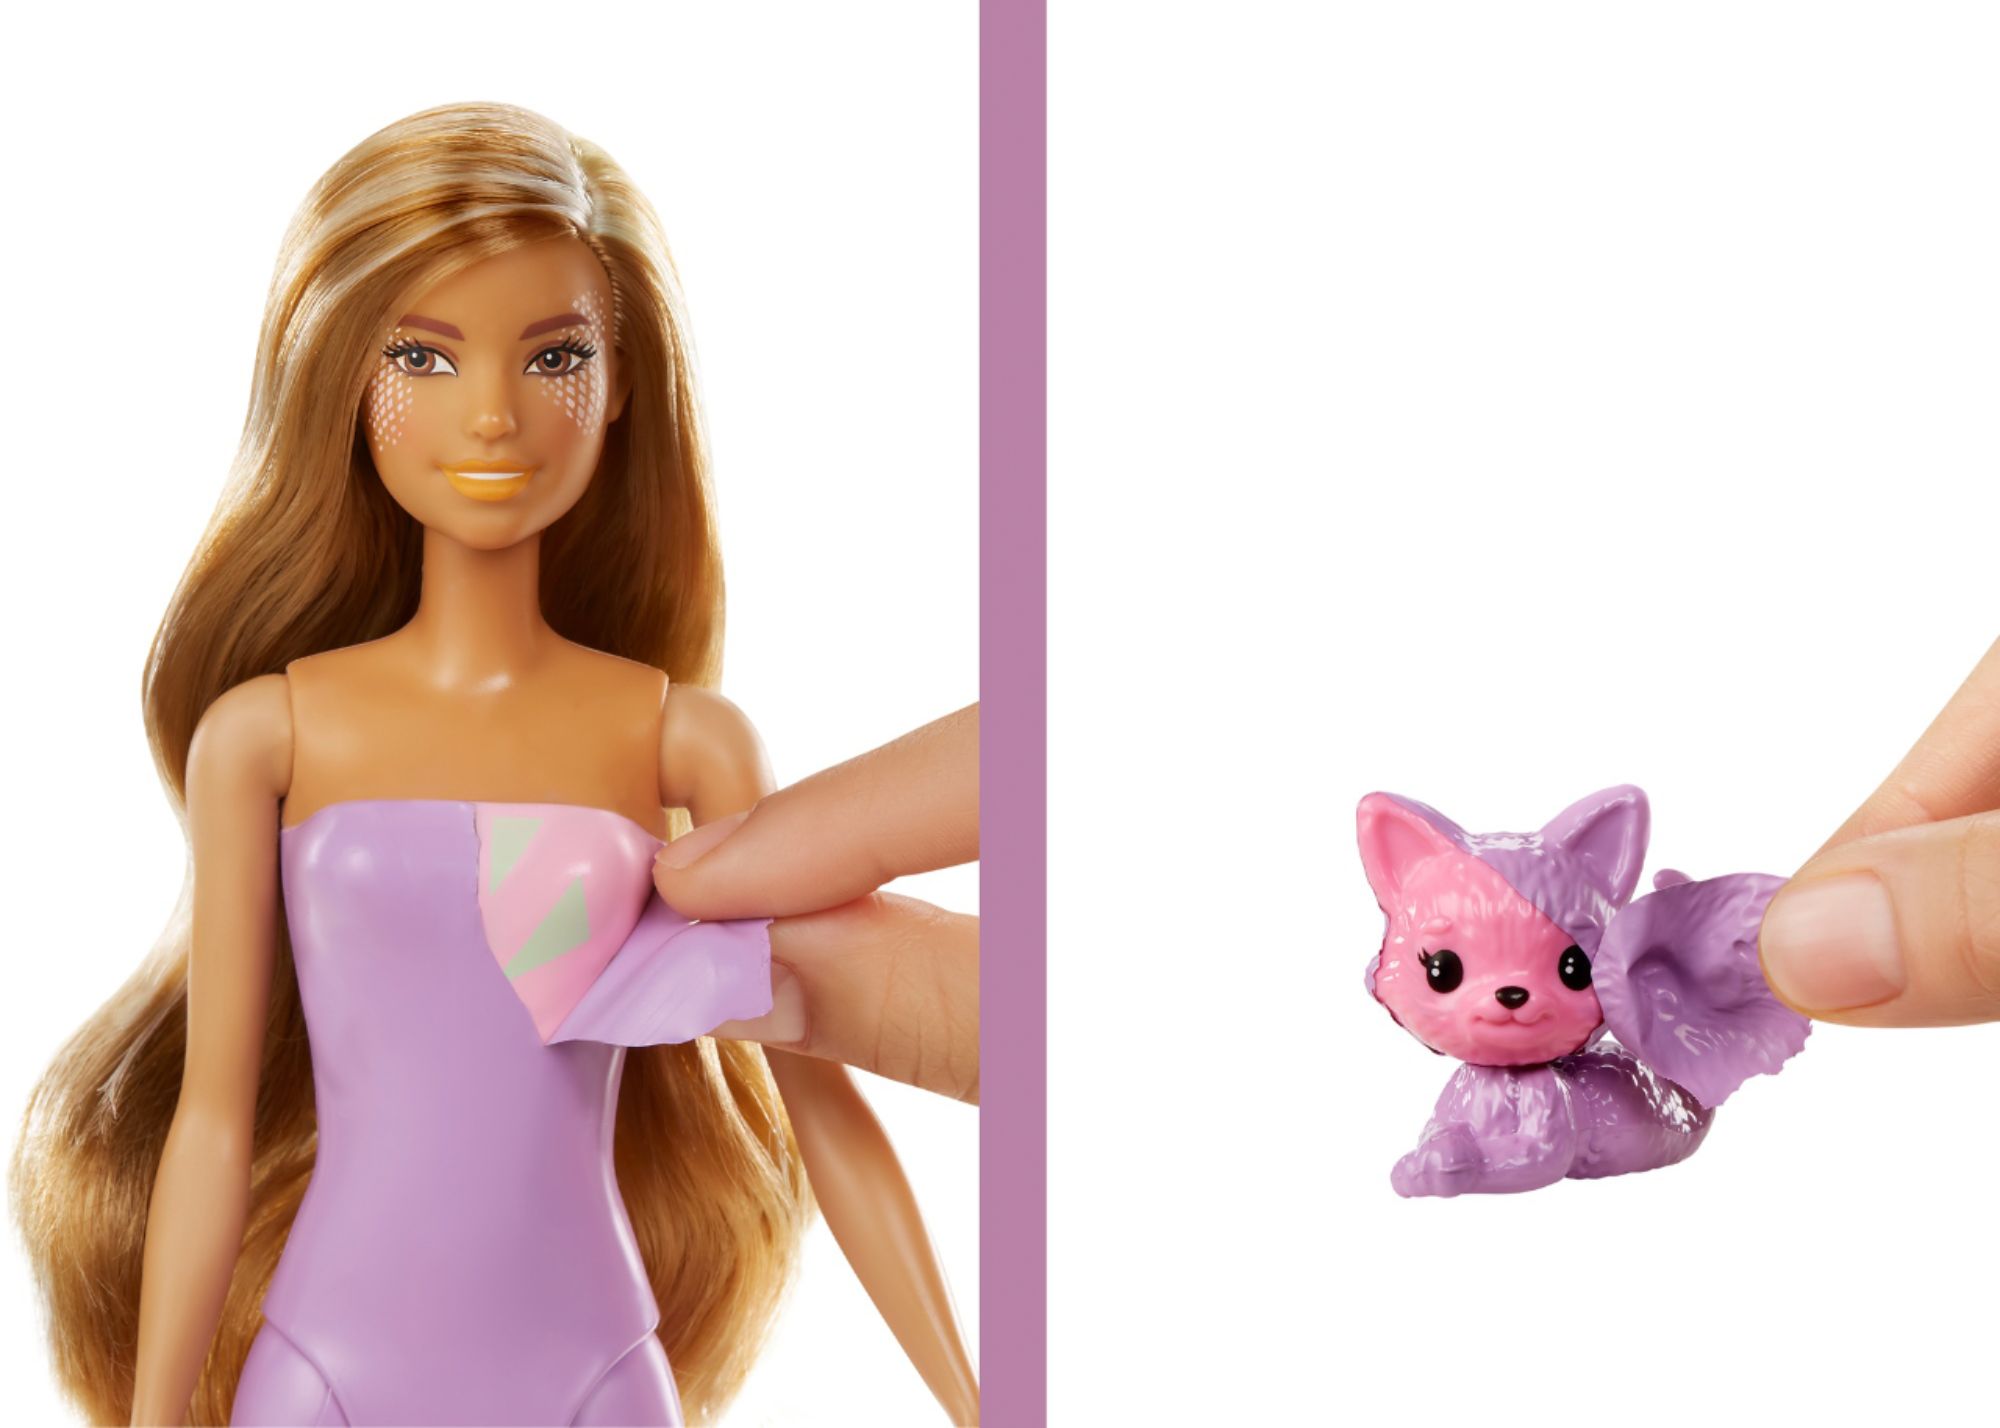 Best Buy: Barbie Color Reveal Mermaid Doll Styles May Vary HCC46